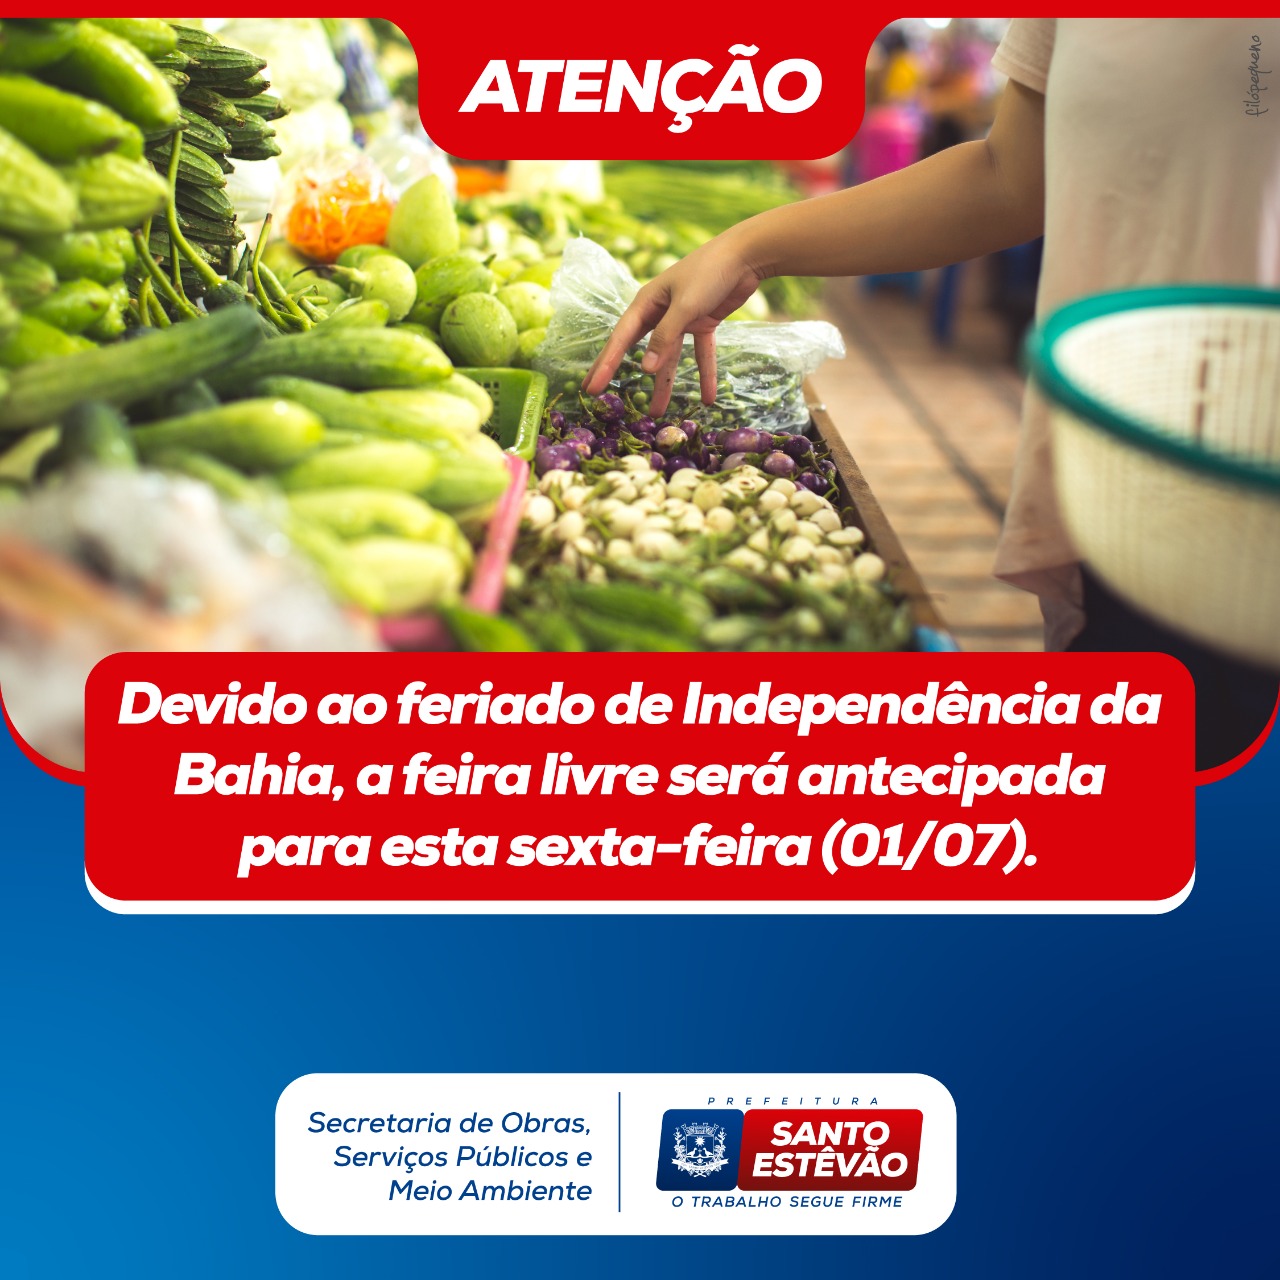 Devido ao feriado de Independência da Bahia, feira livre será antecipada para sexta-feira (01)